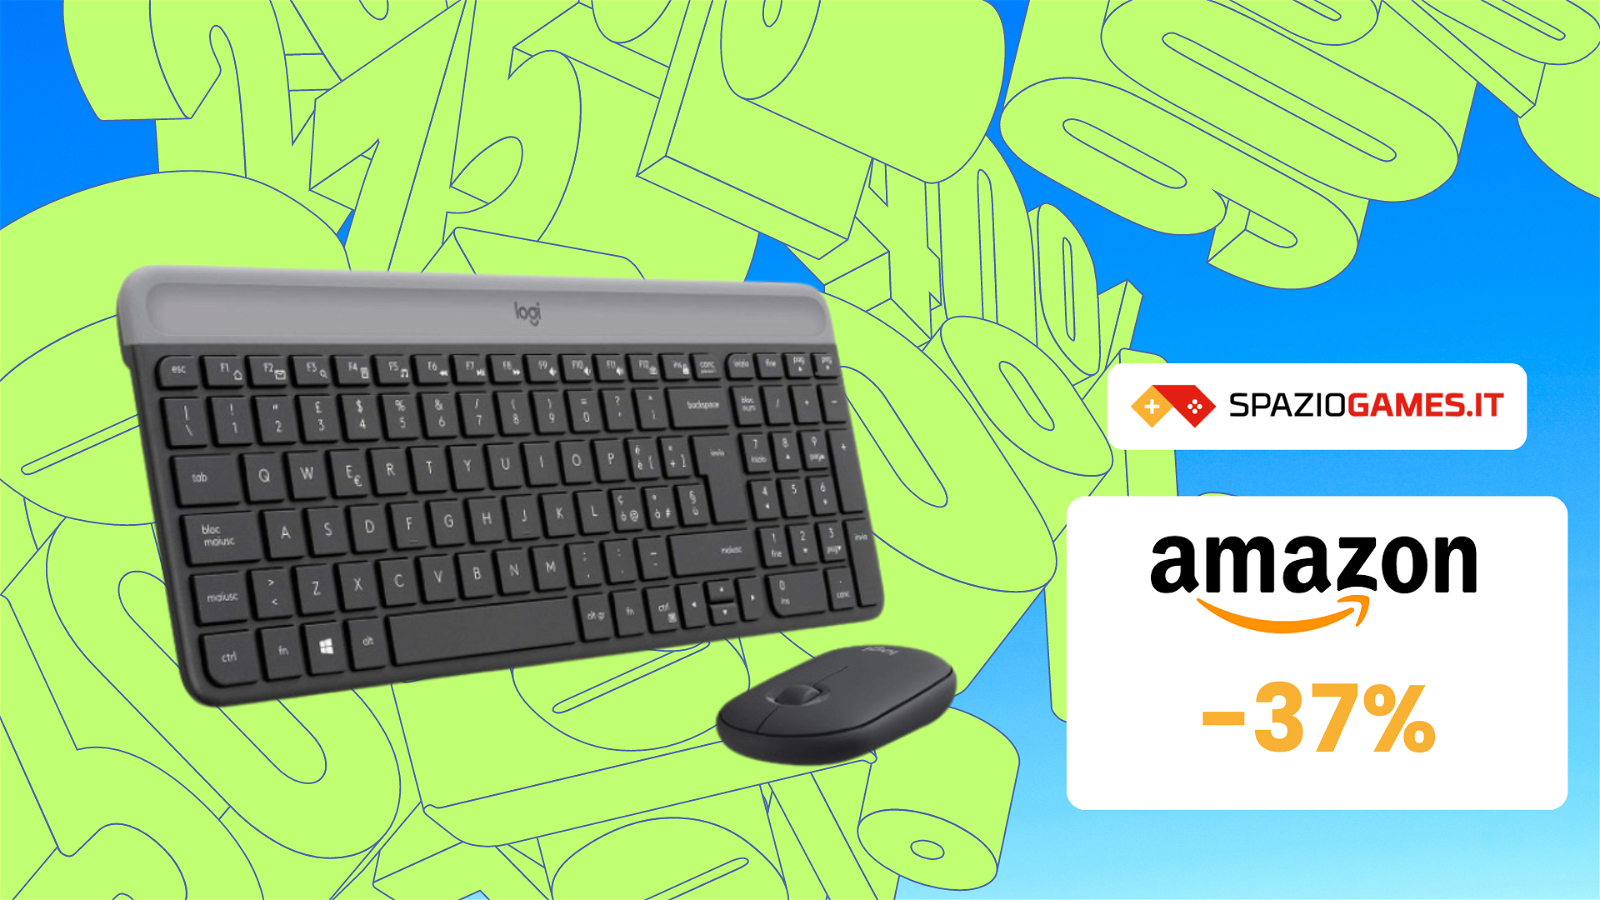 Kit Mouse e Tastiera Logitech a prezzo SHOCK su Amazon! (-37%)